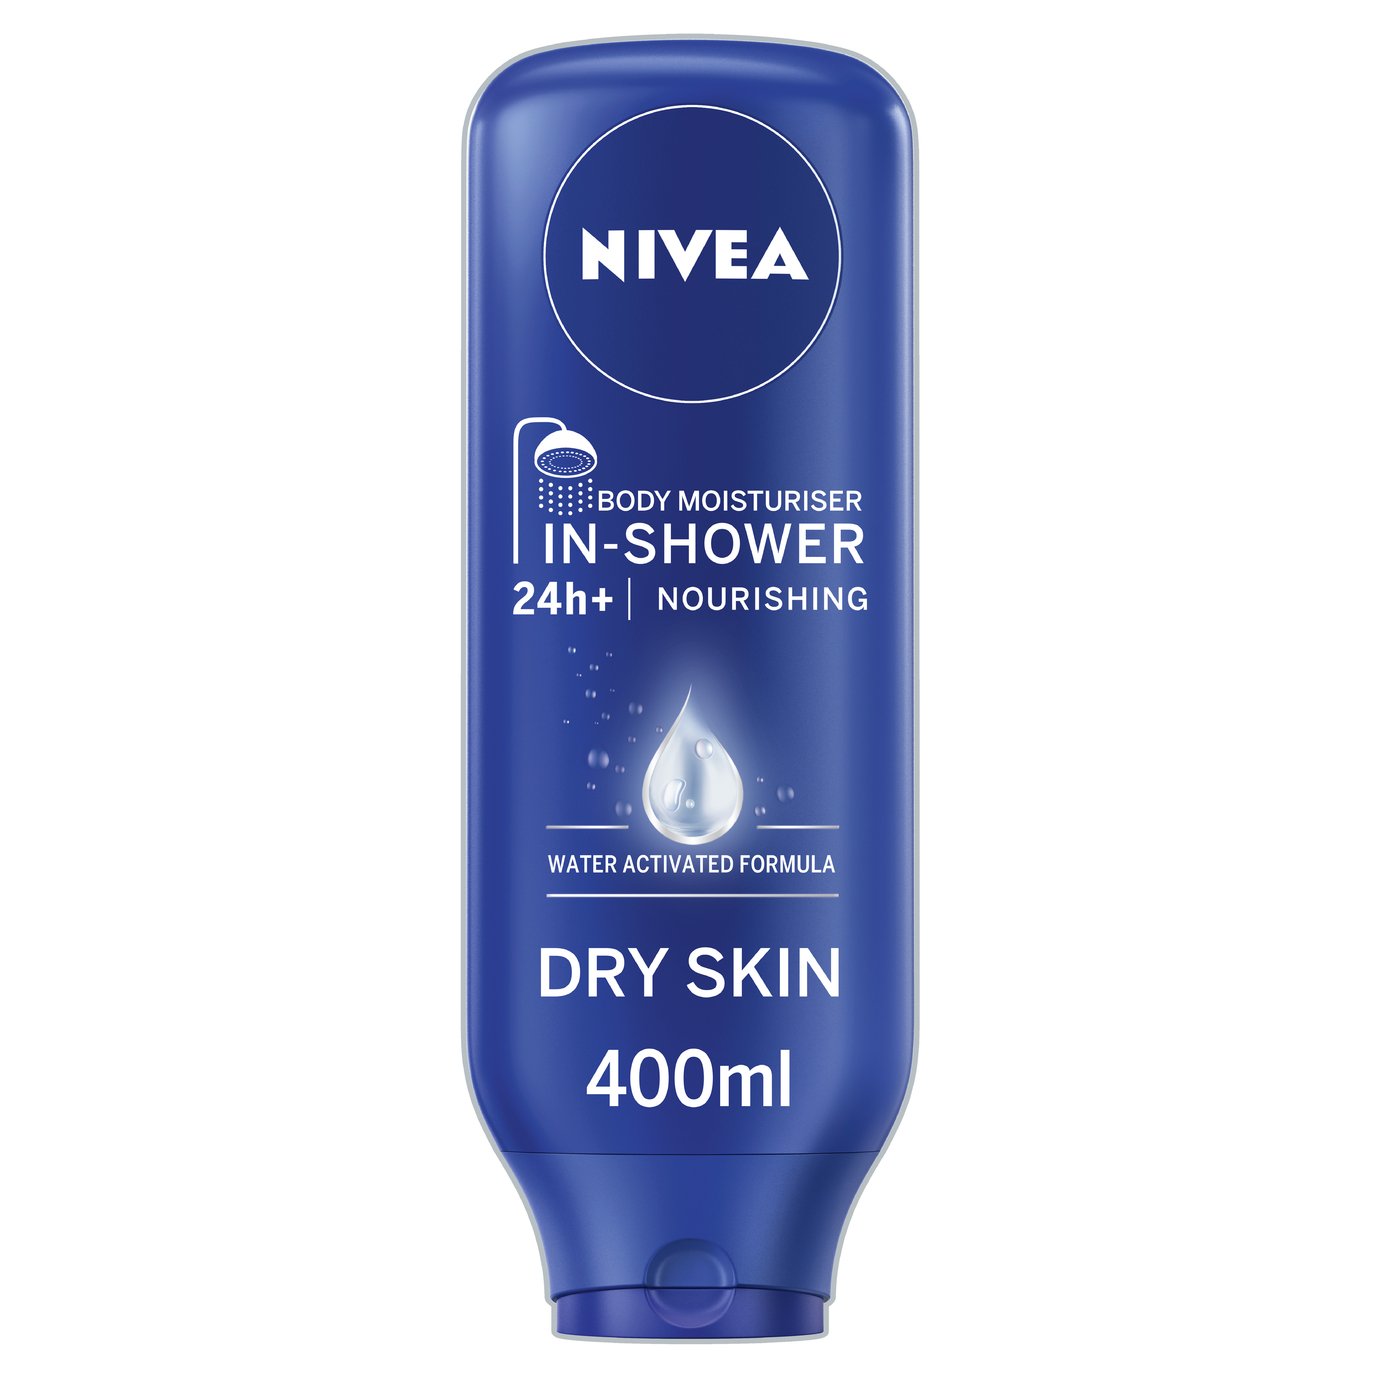 NIVEA Nourishing In-Shower Body Moisturiser - 400ml